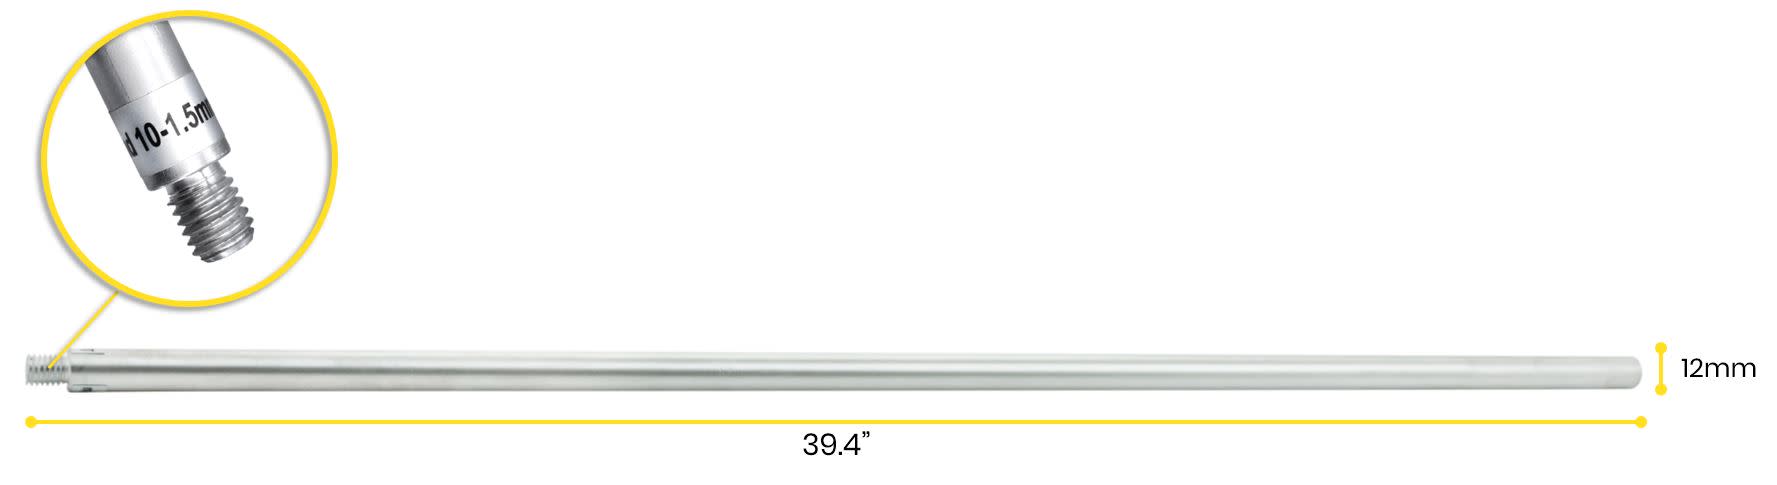 Retort Stand Rod, 39.5" (100cm) - Aluminum - 10 x 1.5mm Thread